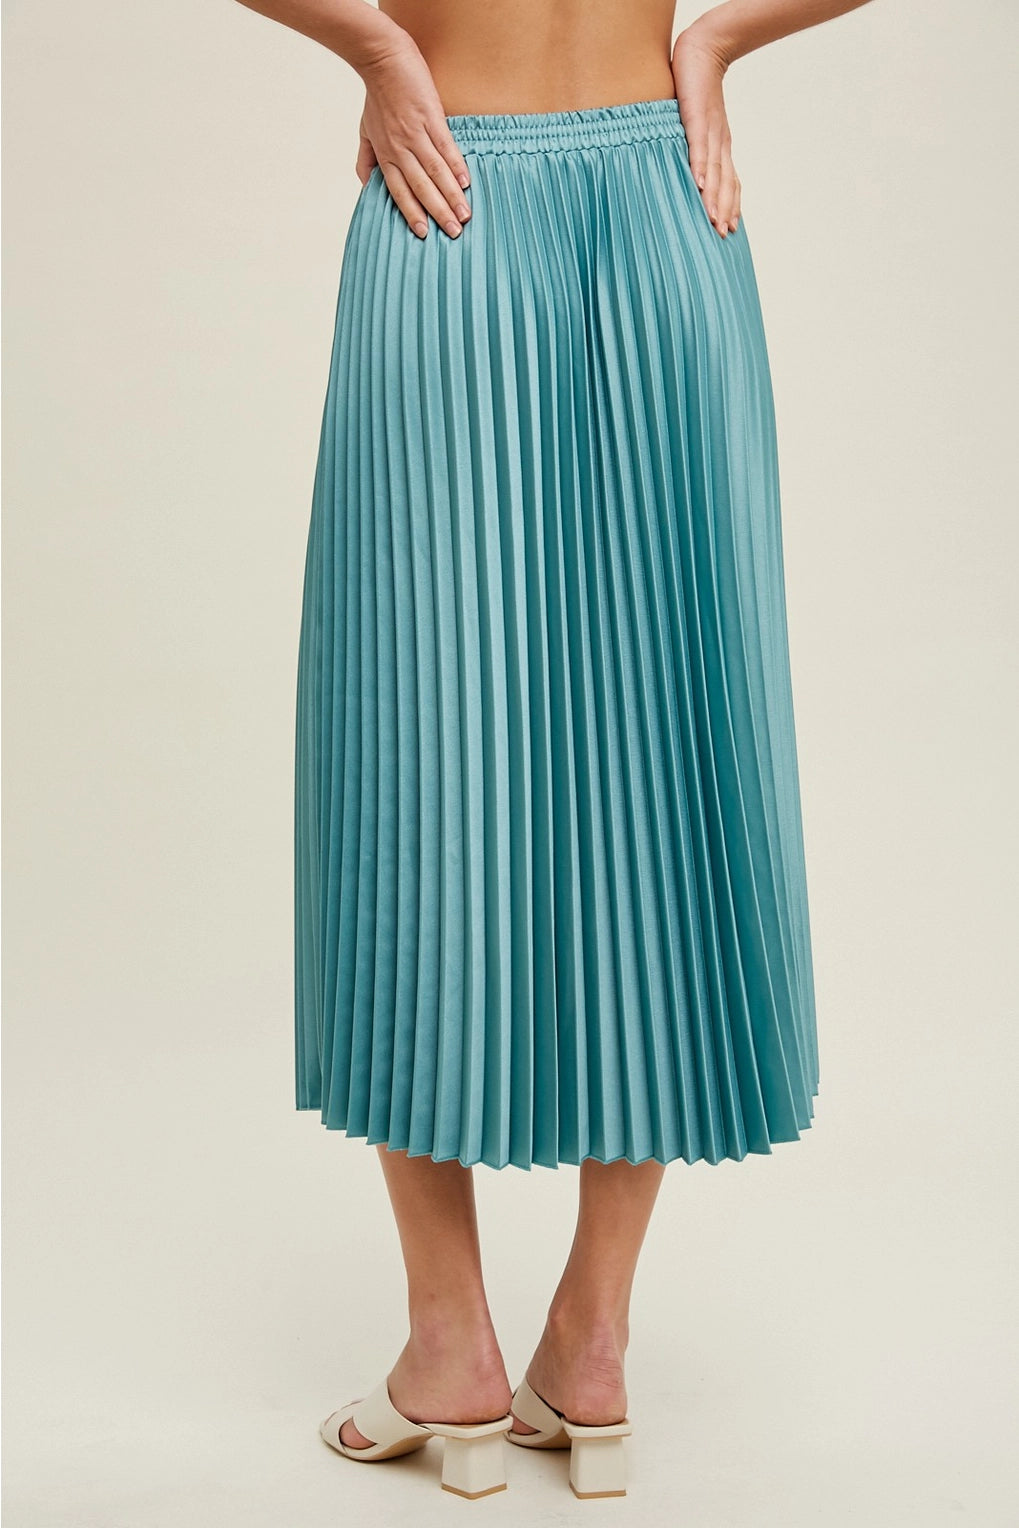 Coastal Blue Pleated Midi Skirt